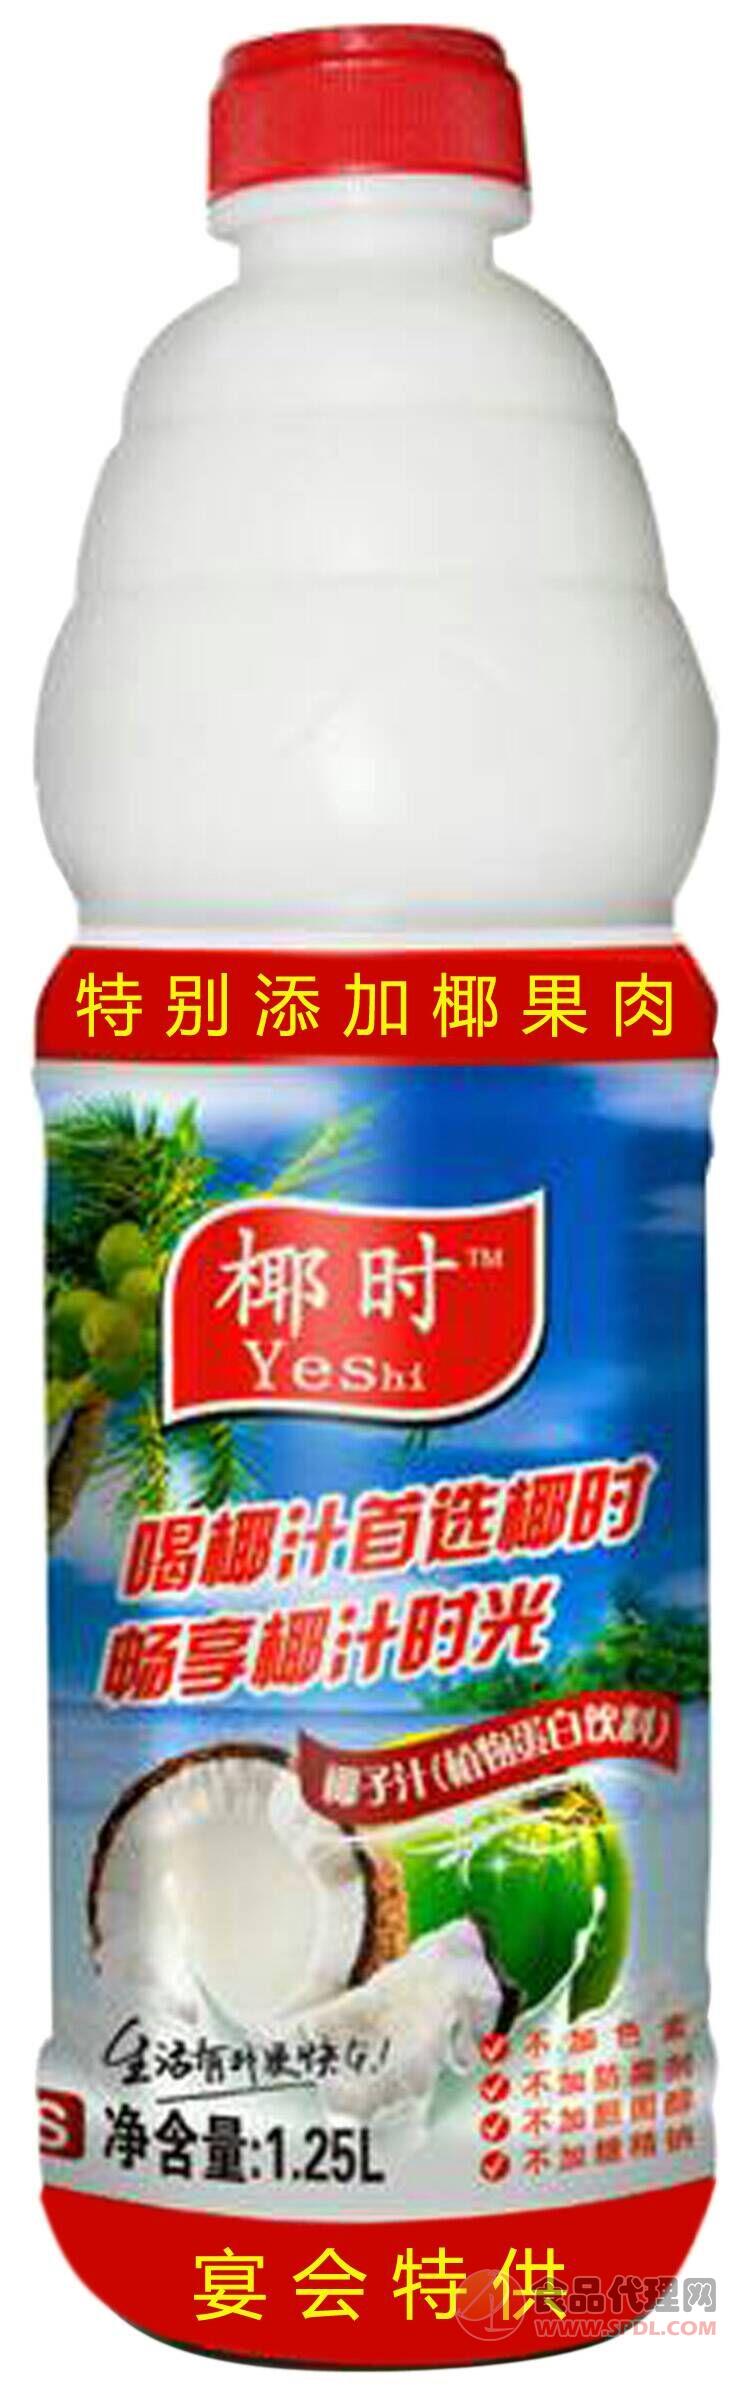 椰时生榨果肉椰子汁1.25L